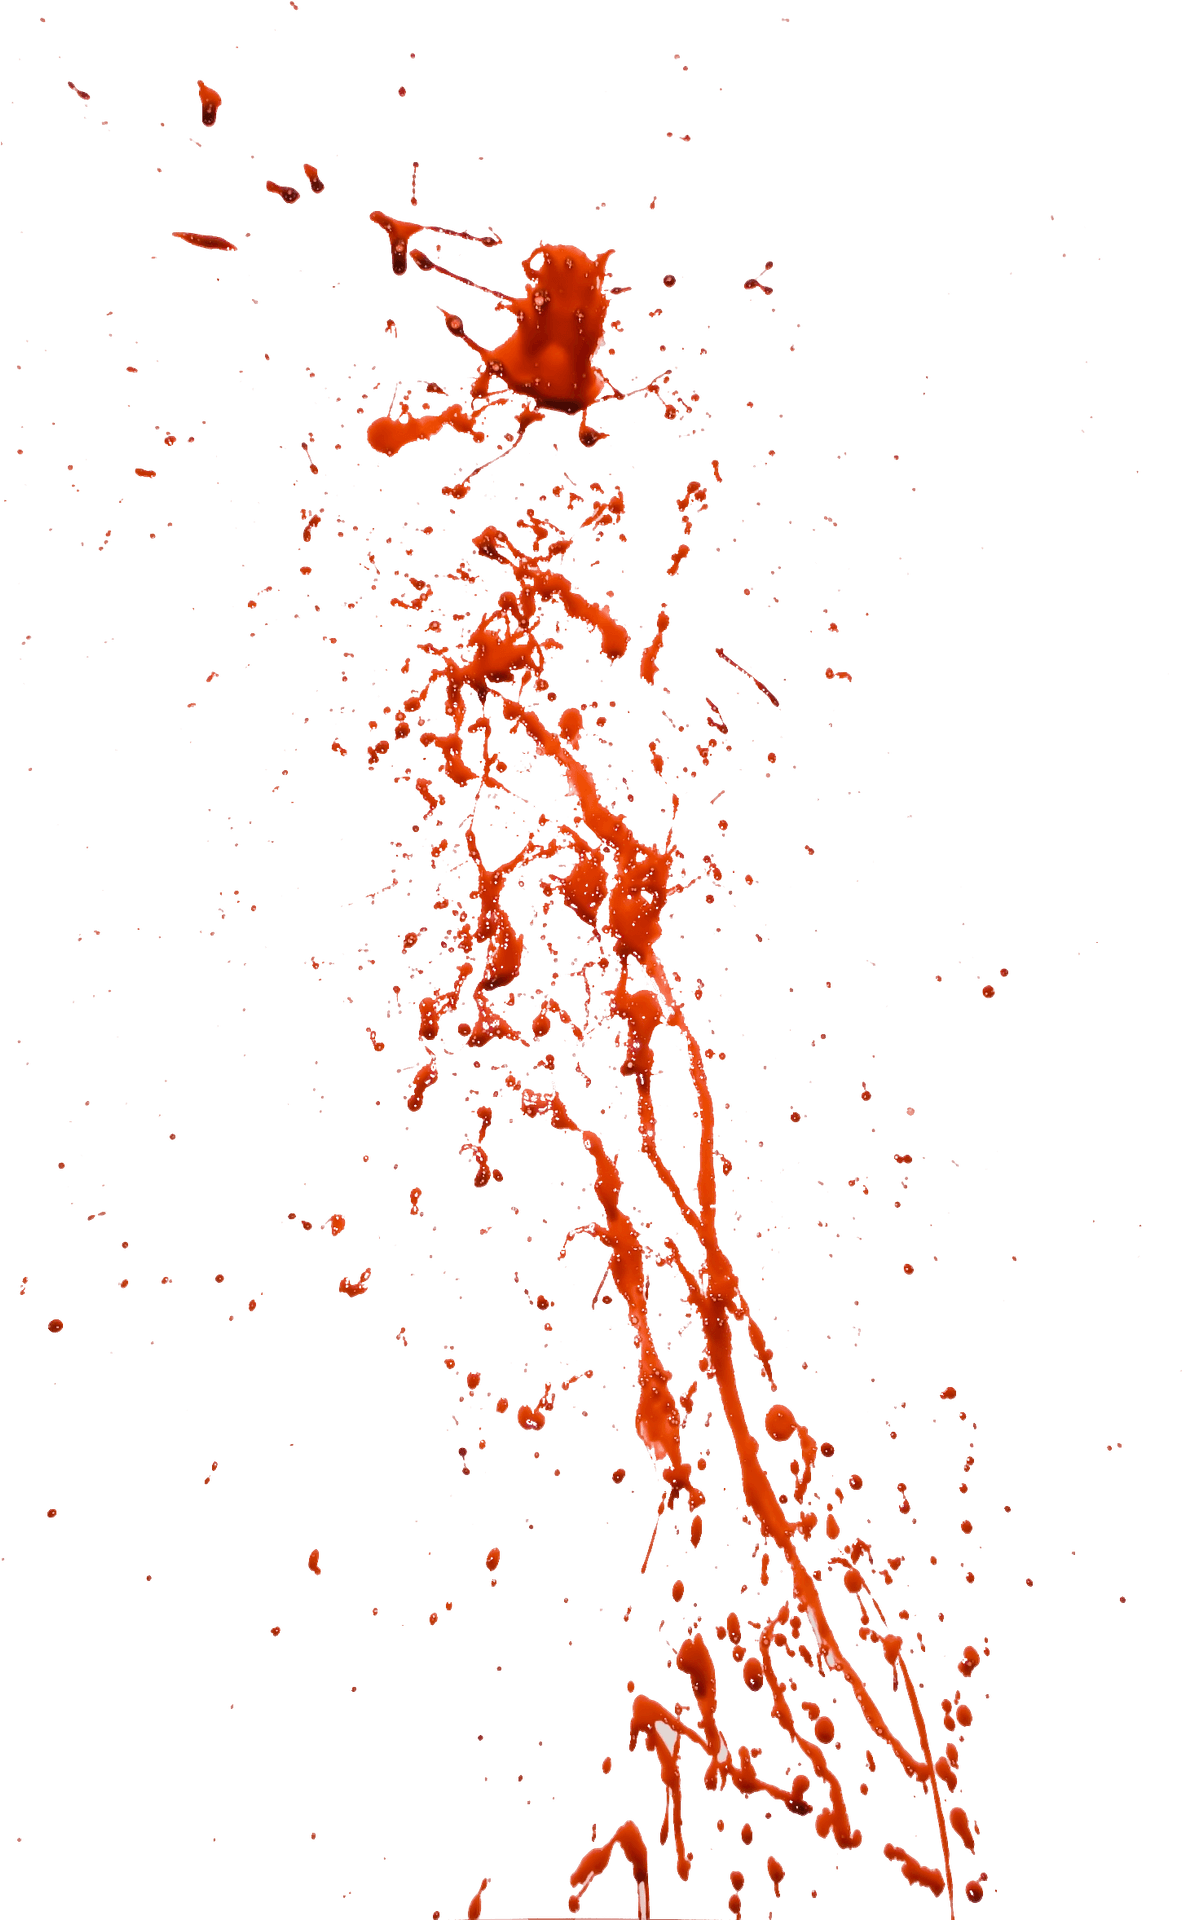 Red Splatter Against Teal Background PNG